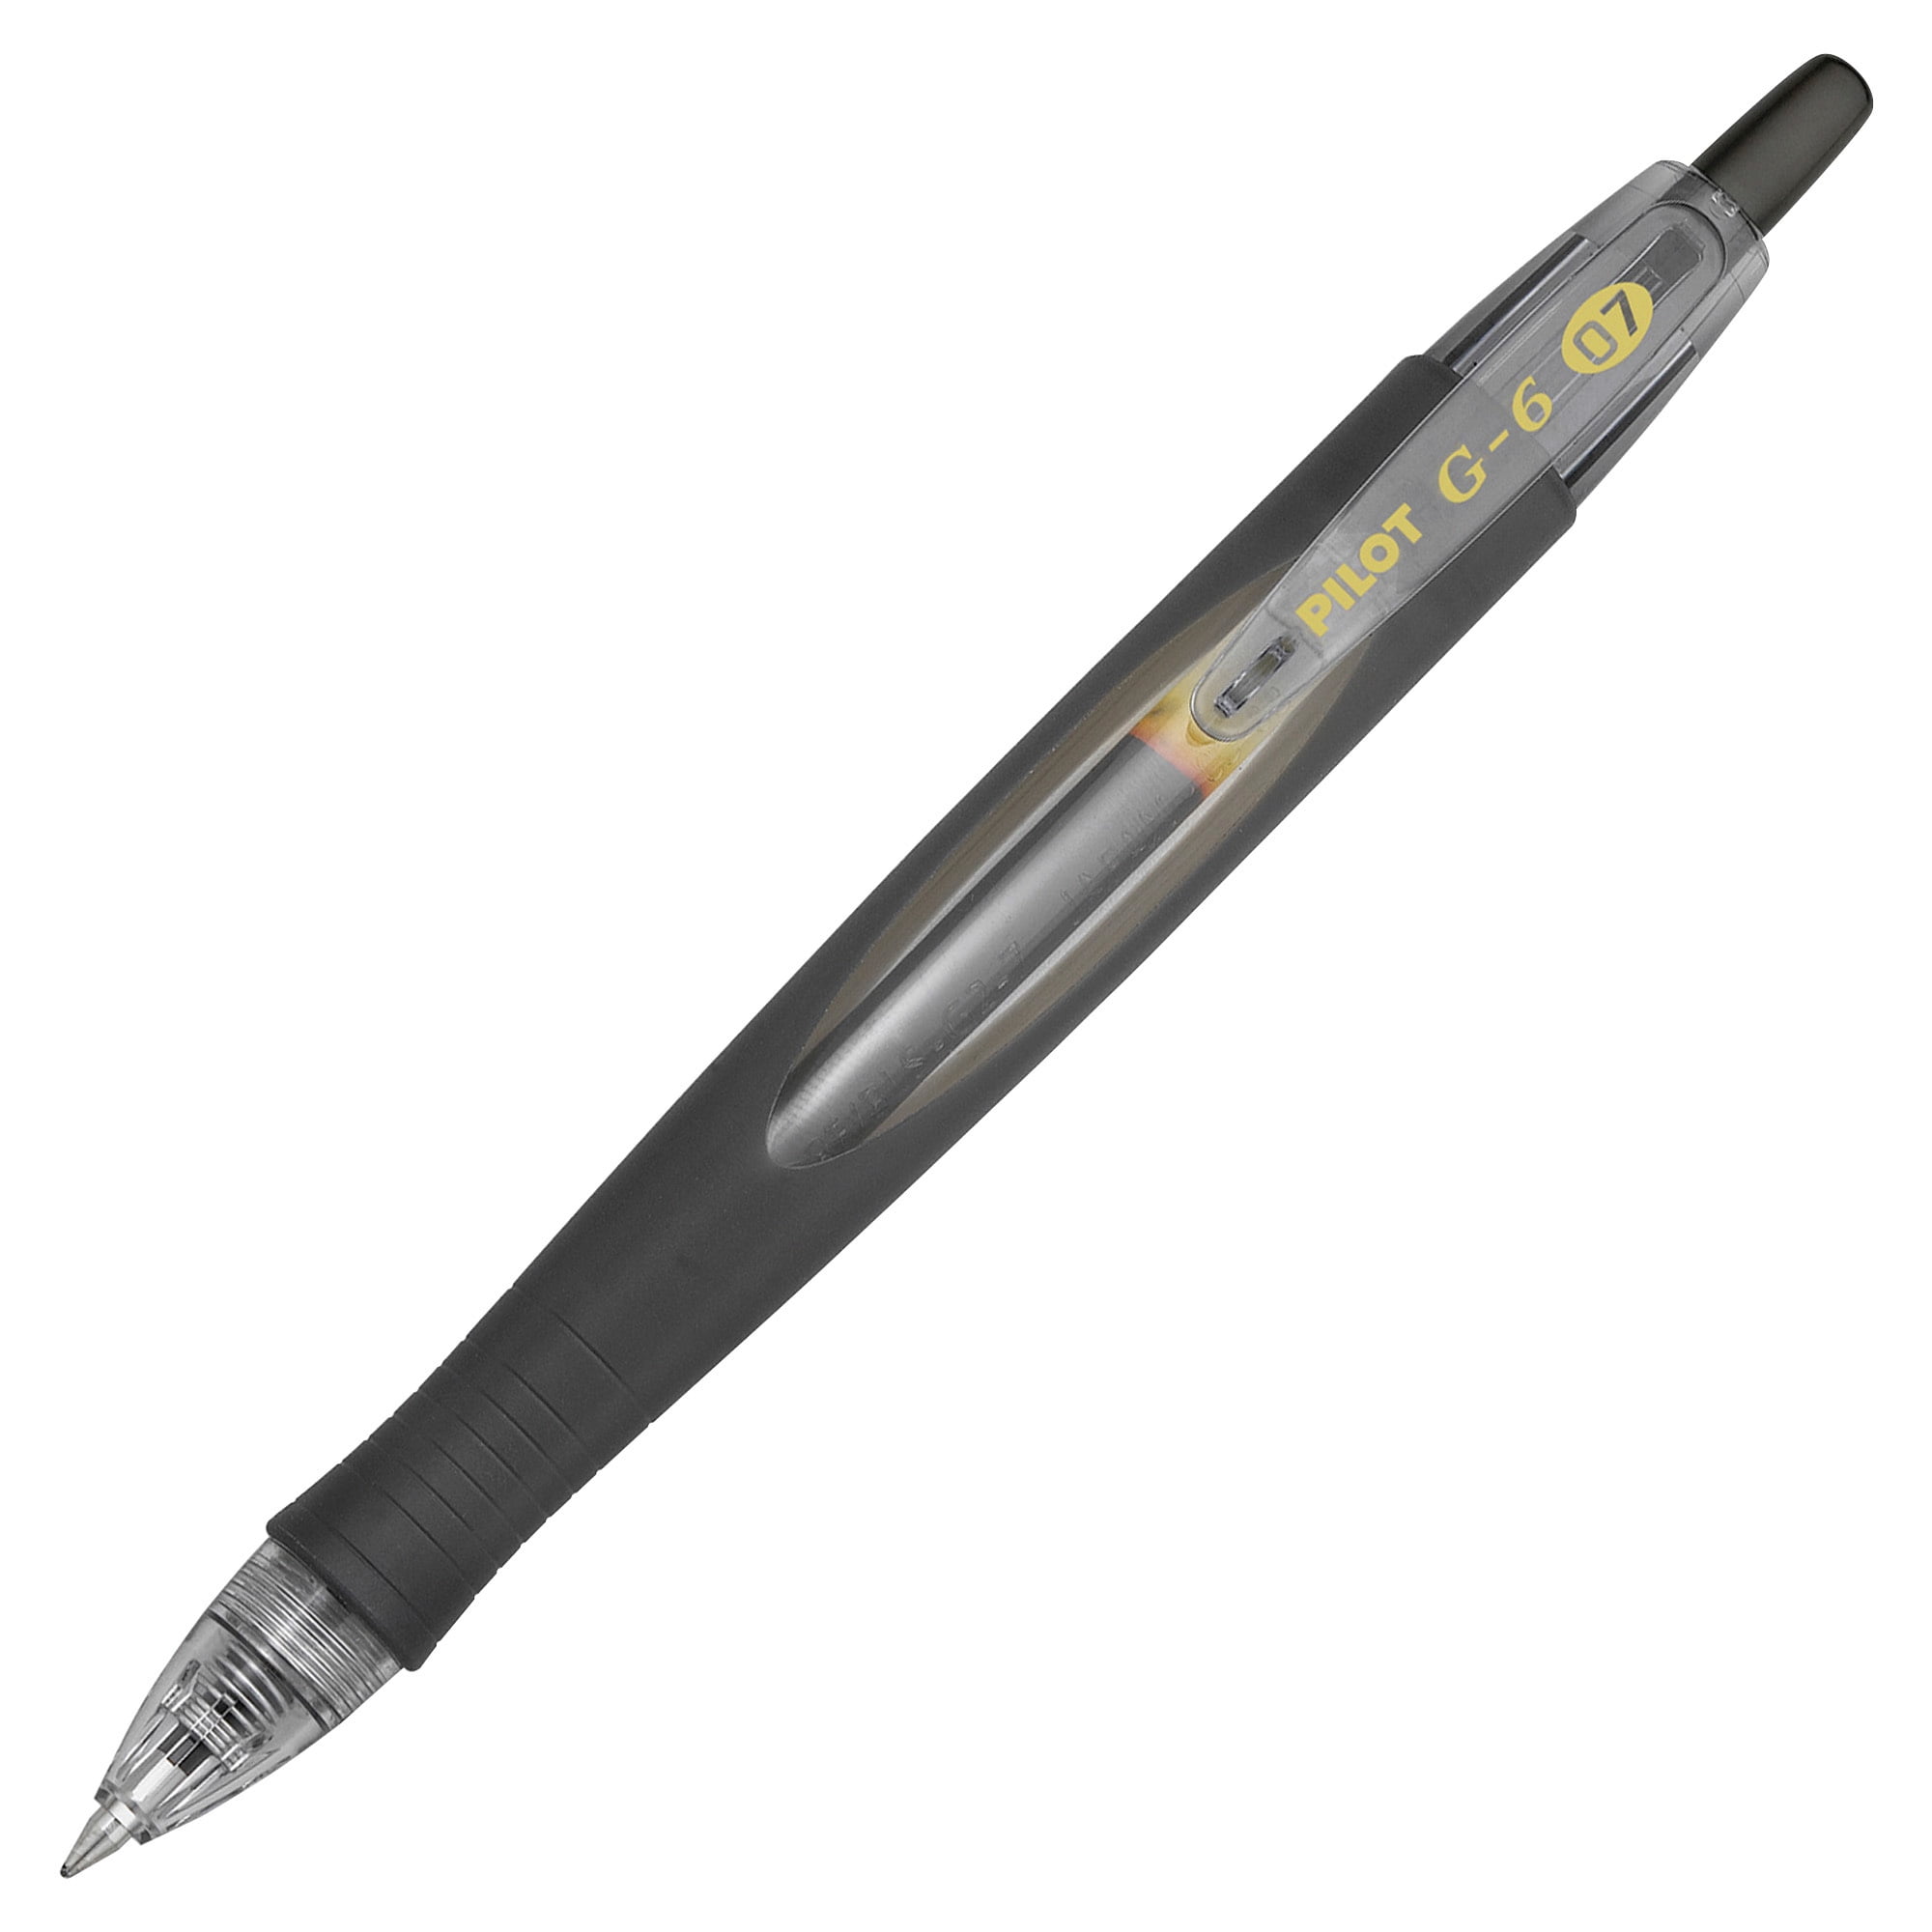  Zebra Pen Z-Grip Retractable Ballpoint Pen, Medium Point,  1.0mm, Black Ink, 18-pack : Everything Else